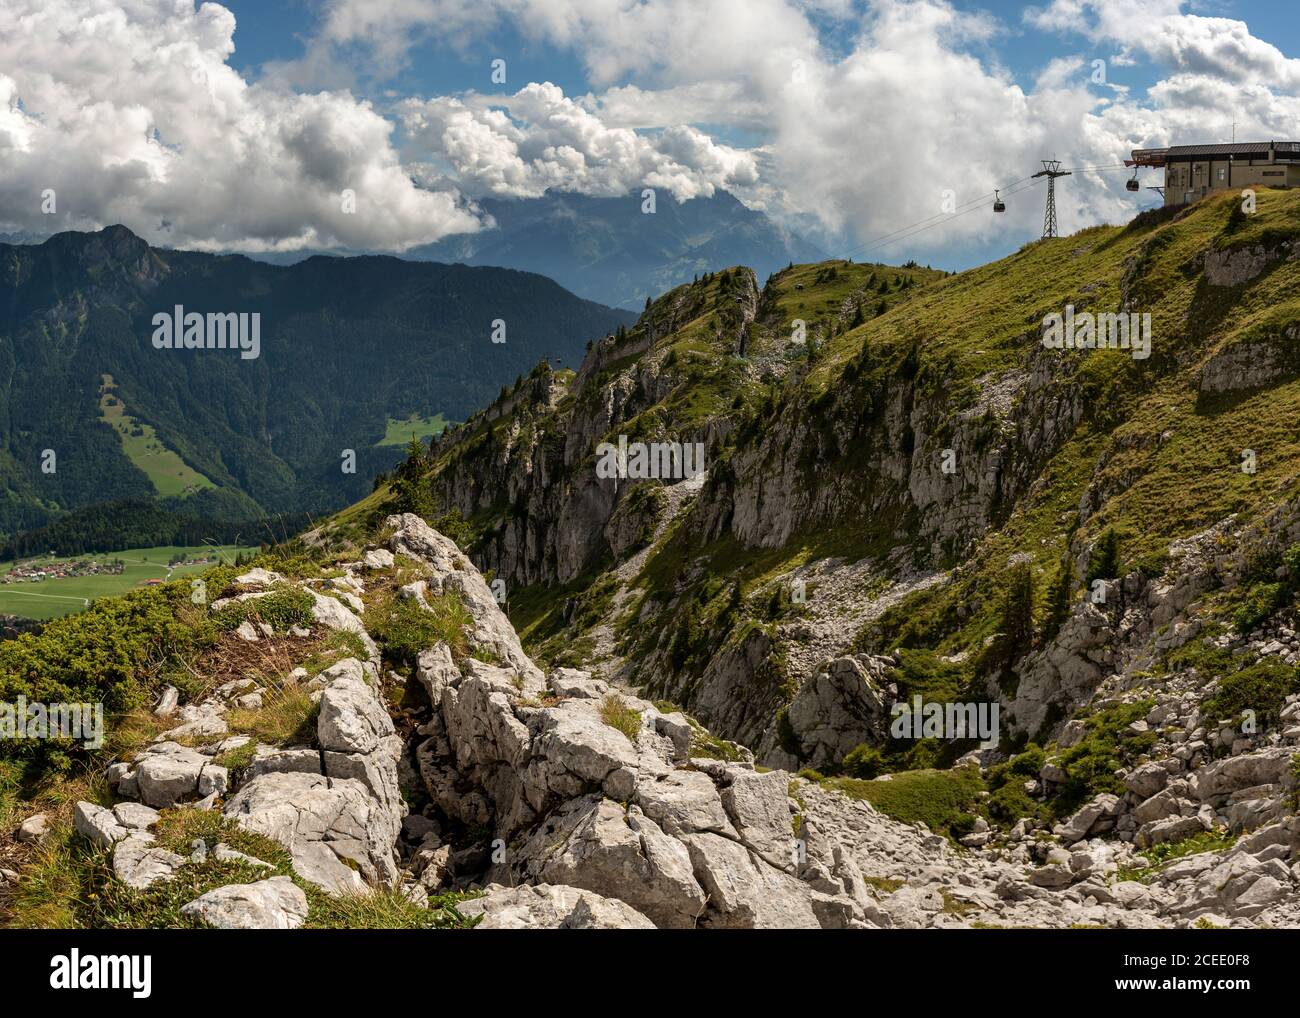 Gondola lift station on the top of Berneuse, Leysin, Switzerland Stock Photo